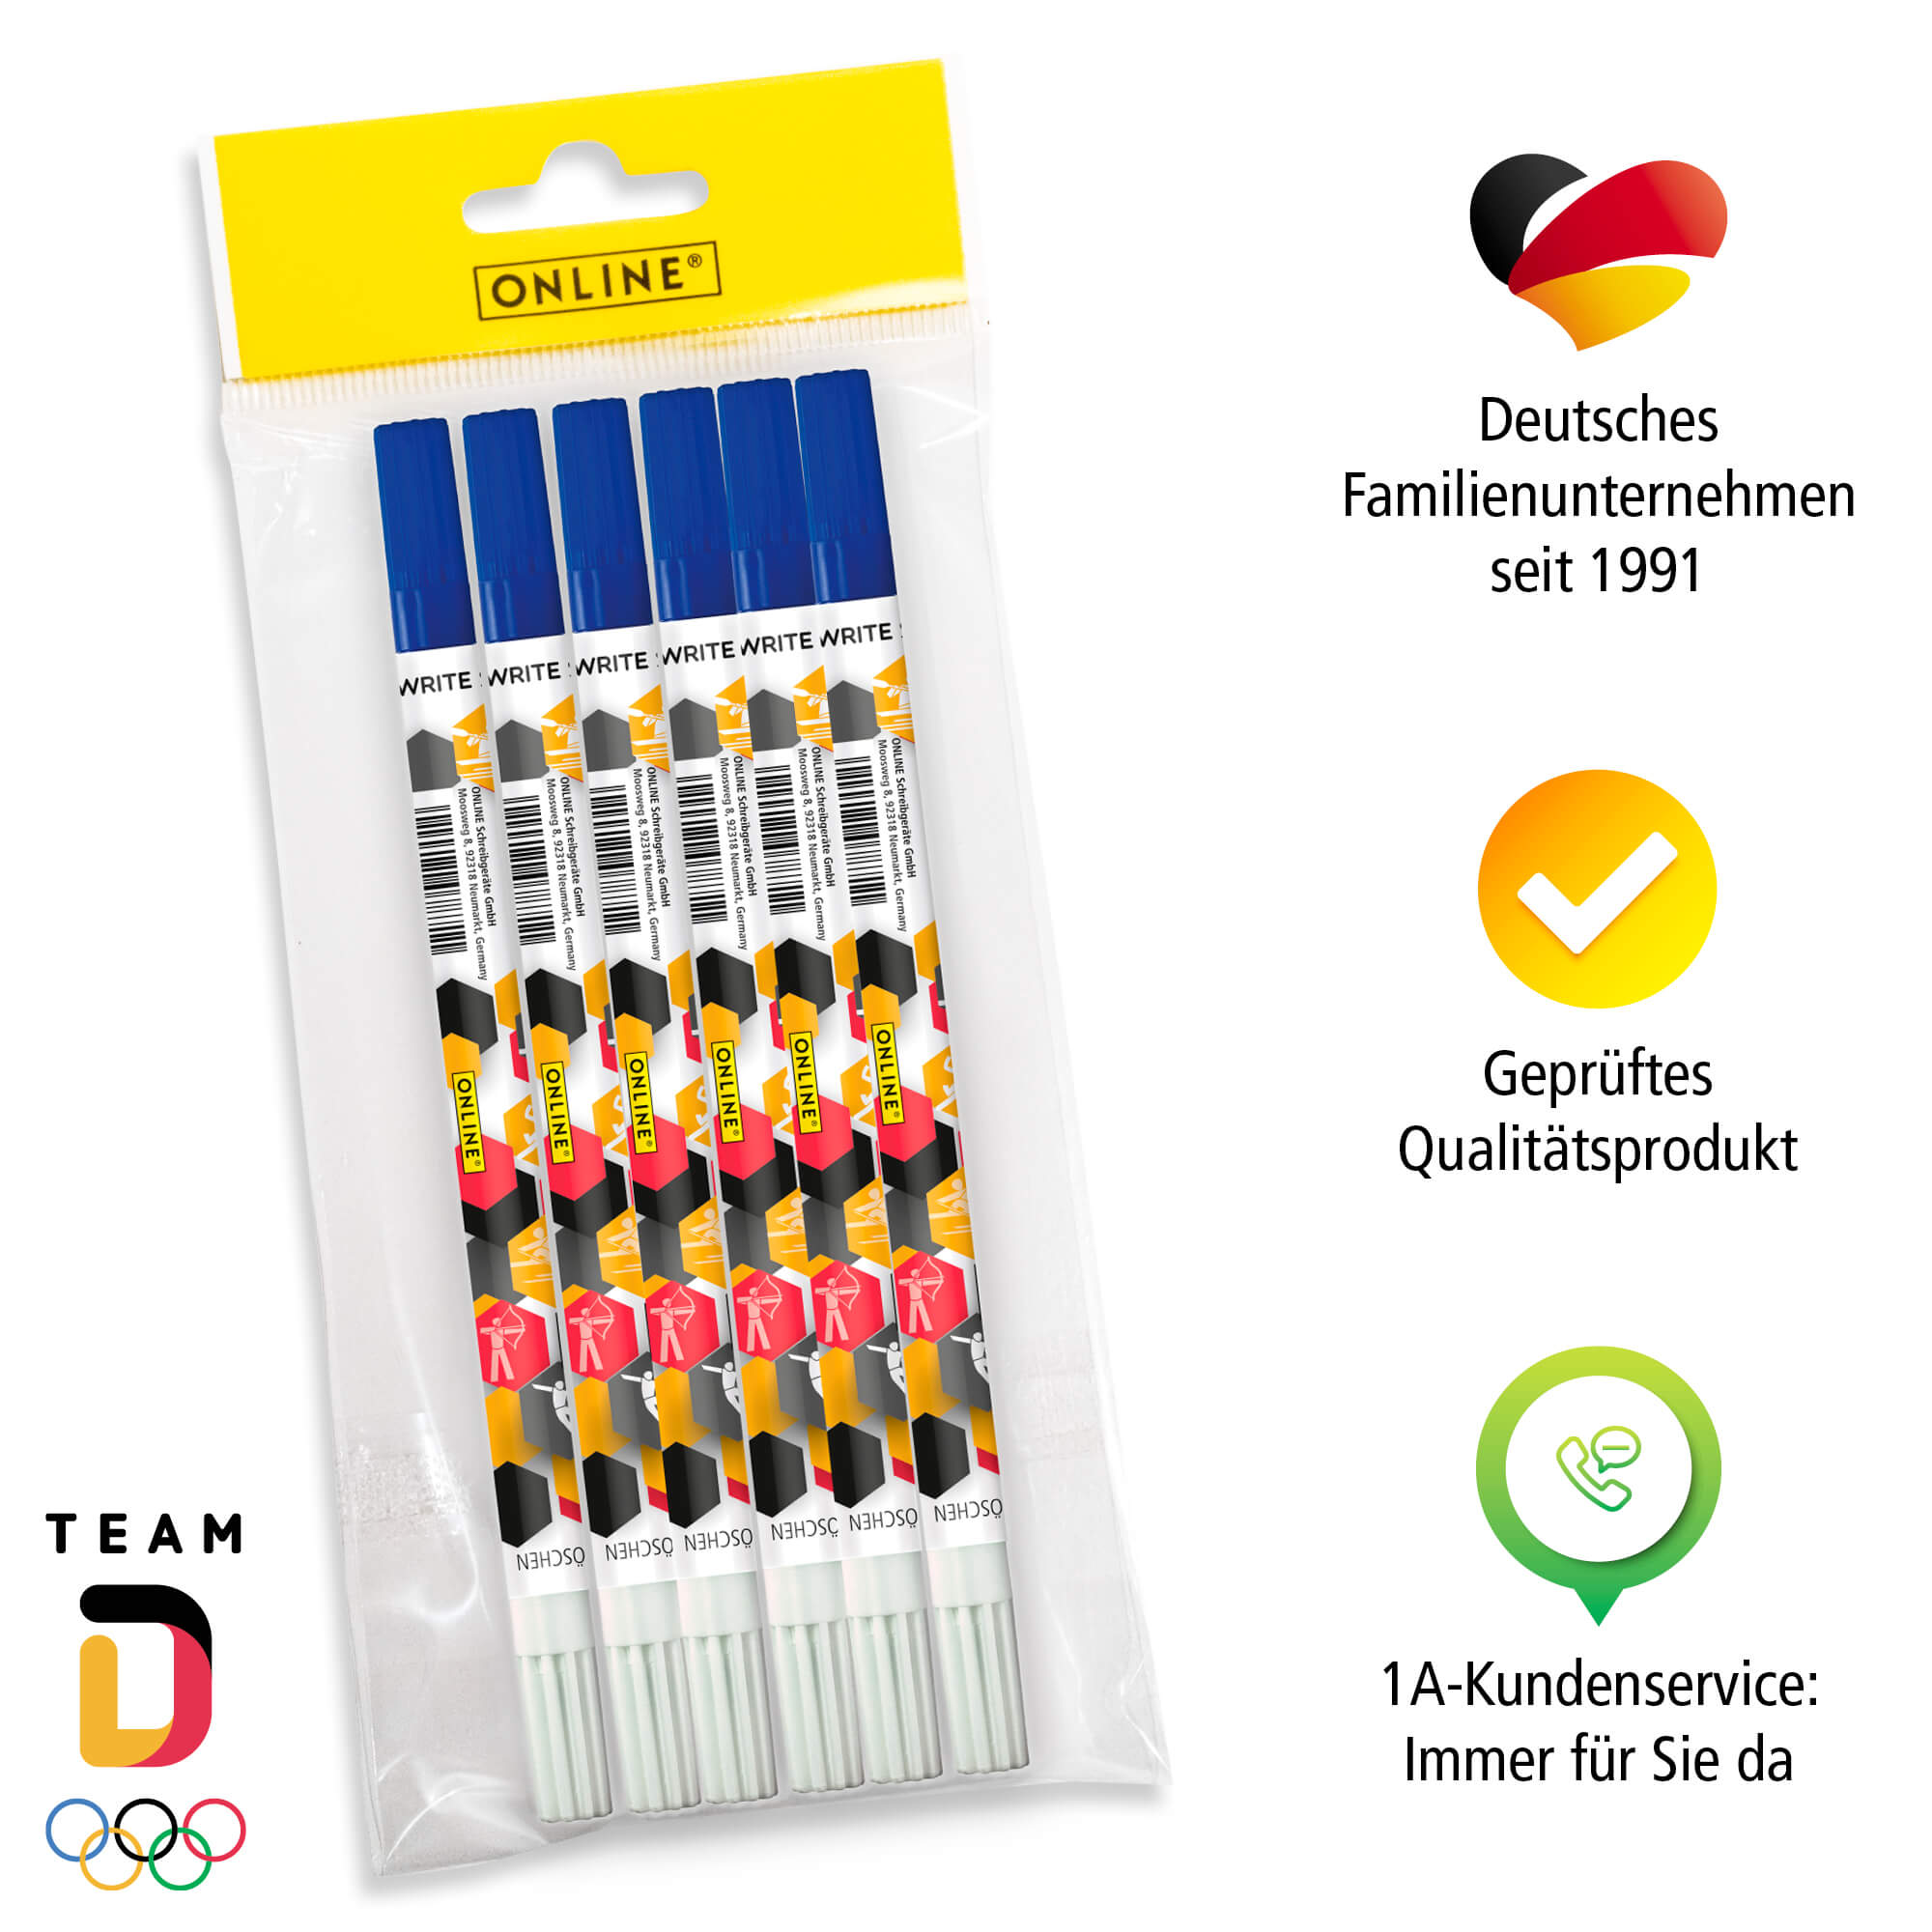 Value Pack Ink Eraser, 6 pcs., Team D